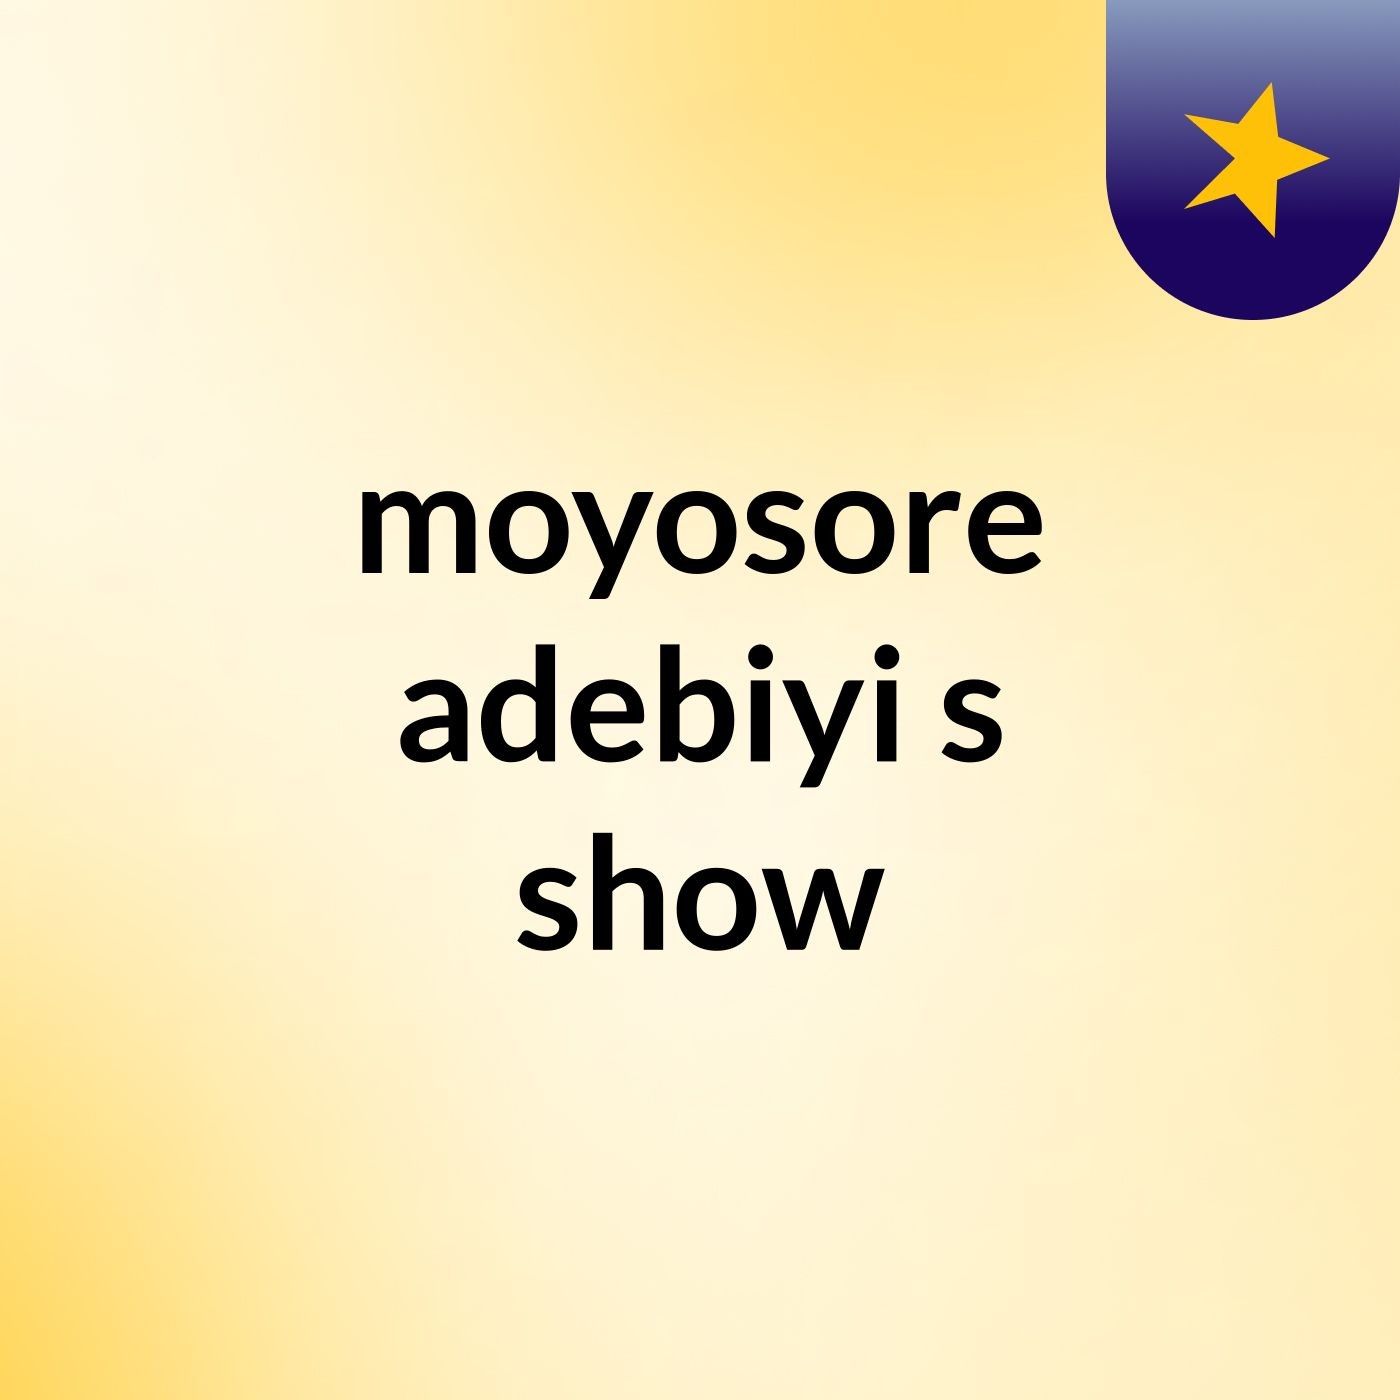 moyosore adebiyi's show